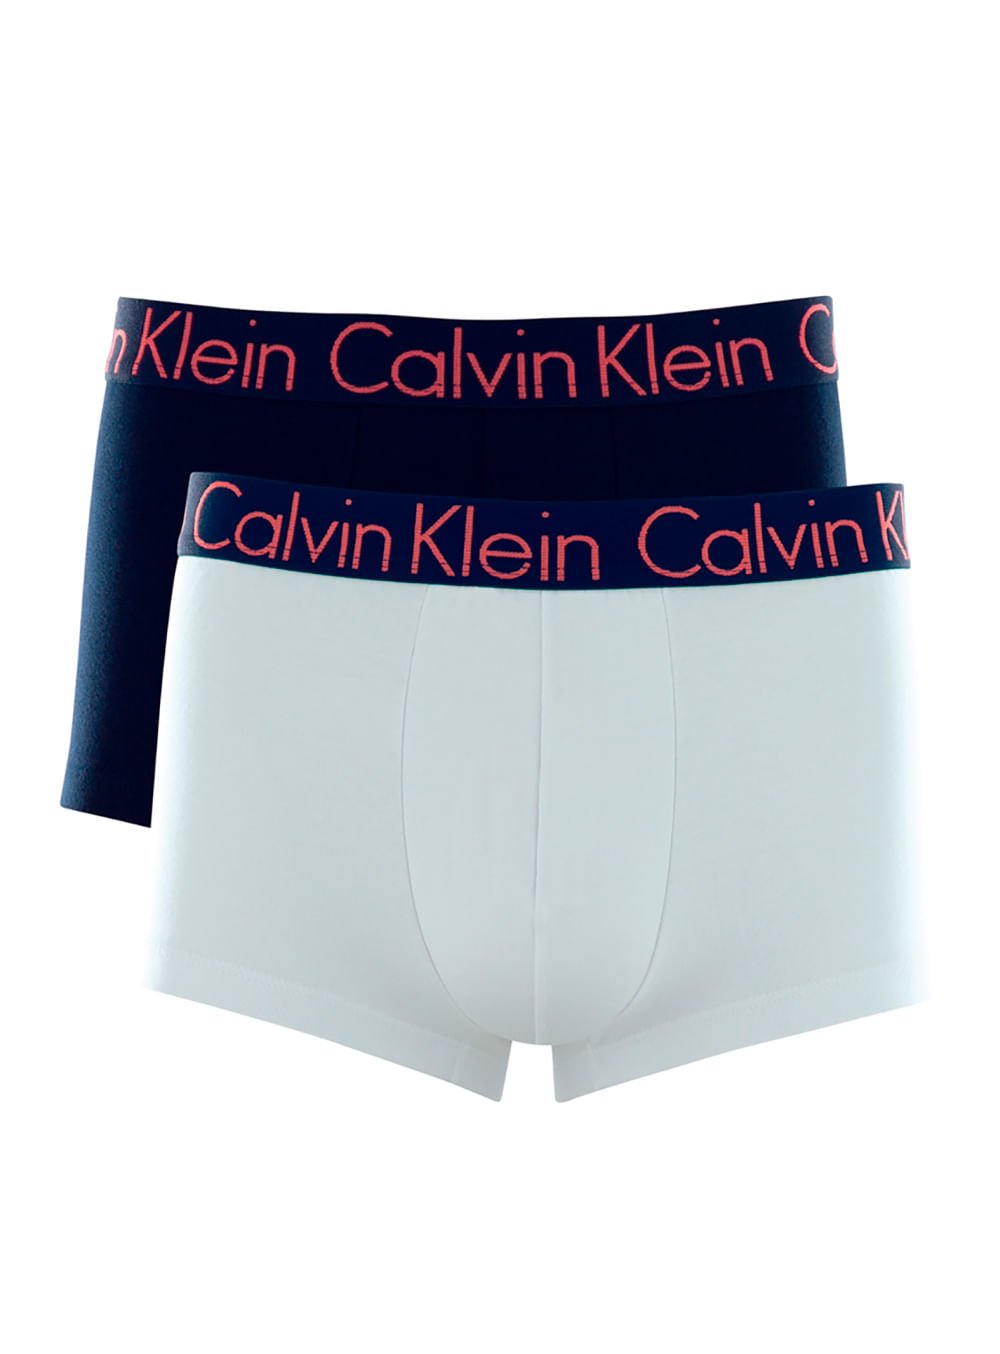 Cueca Calvin Klein Branca Light Grey para o Final de Ano em até 12x